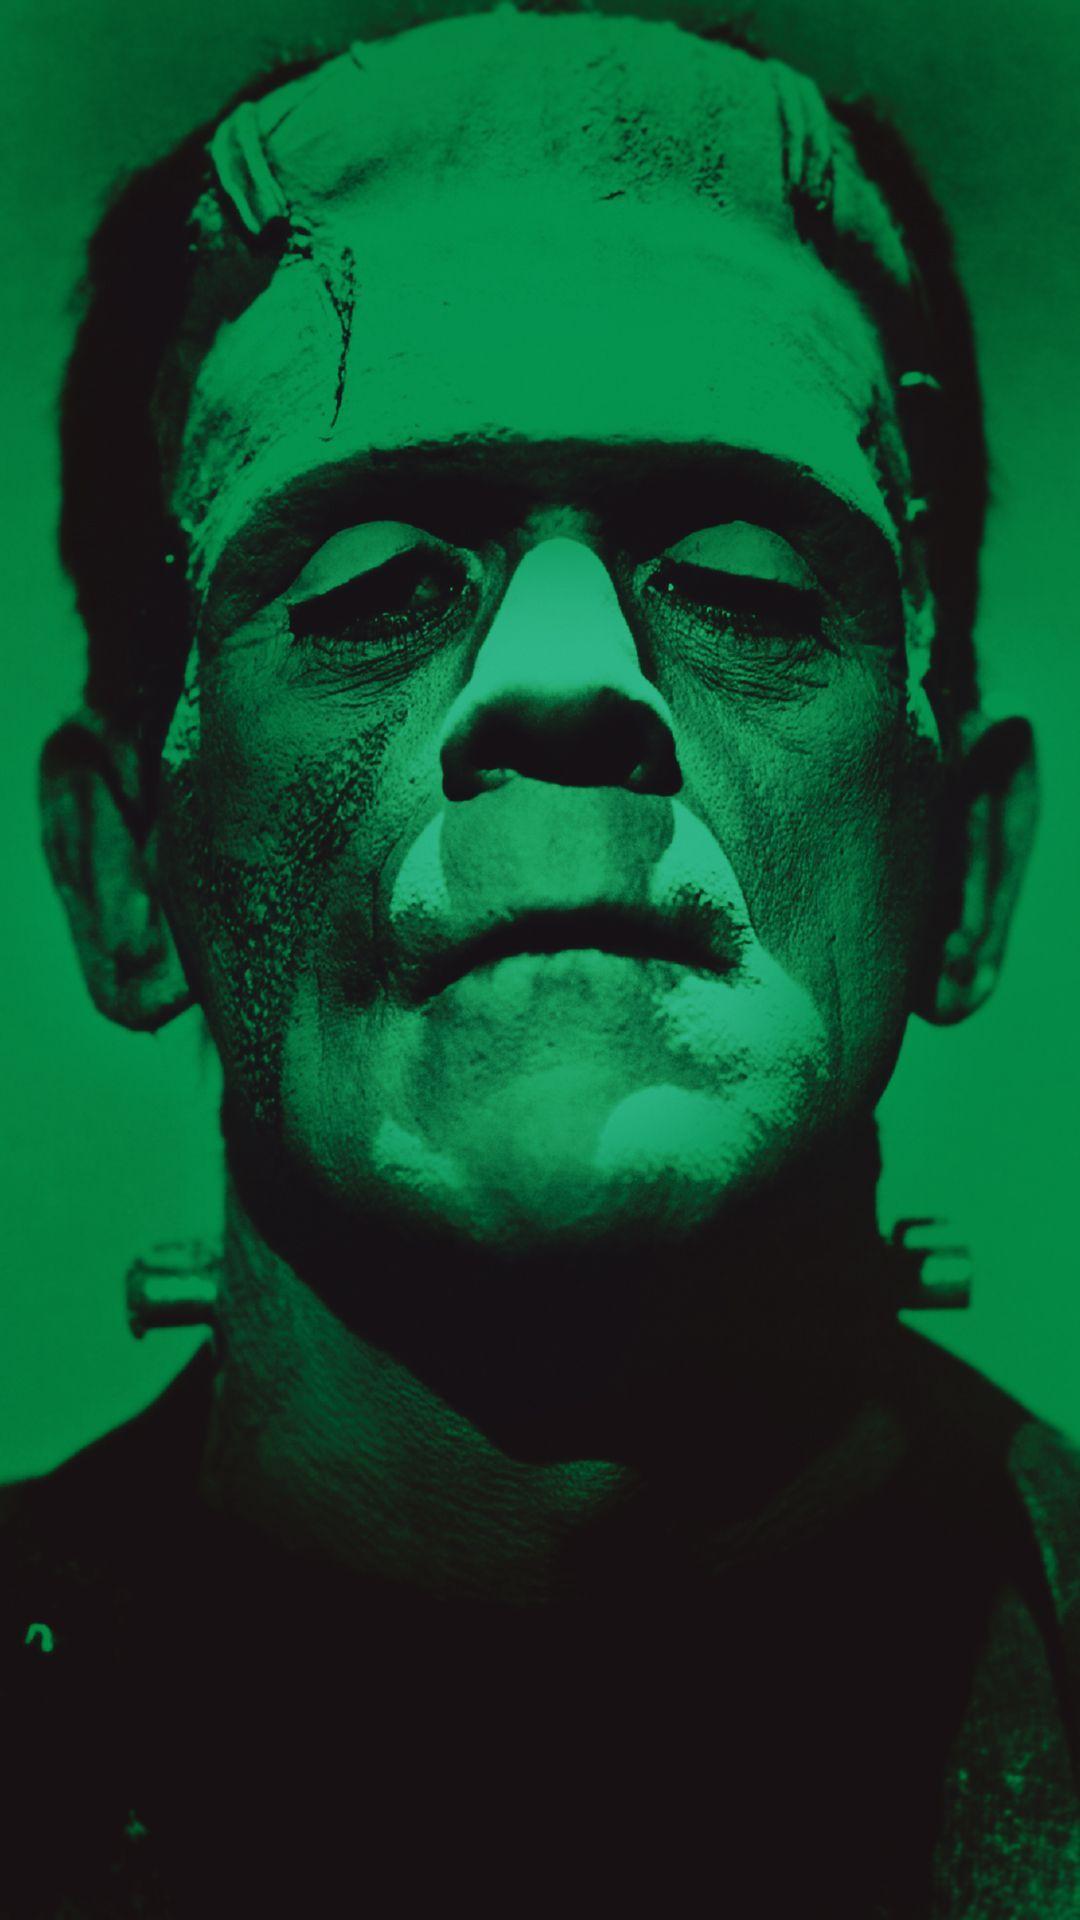 Frankenstein Computer Wallpaper Desktop Background. Halloween wallpaper, Frankenstein, Green aesthetic